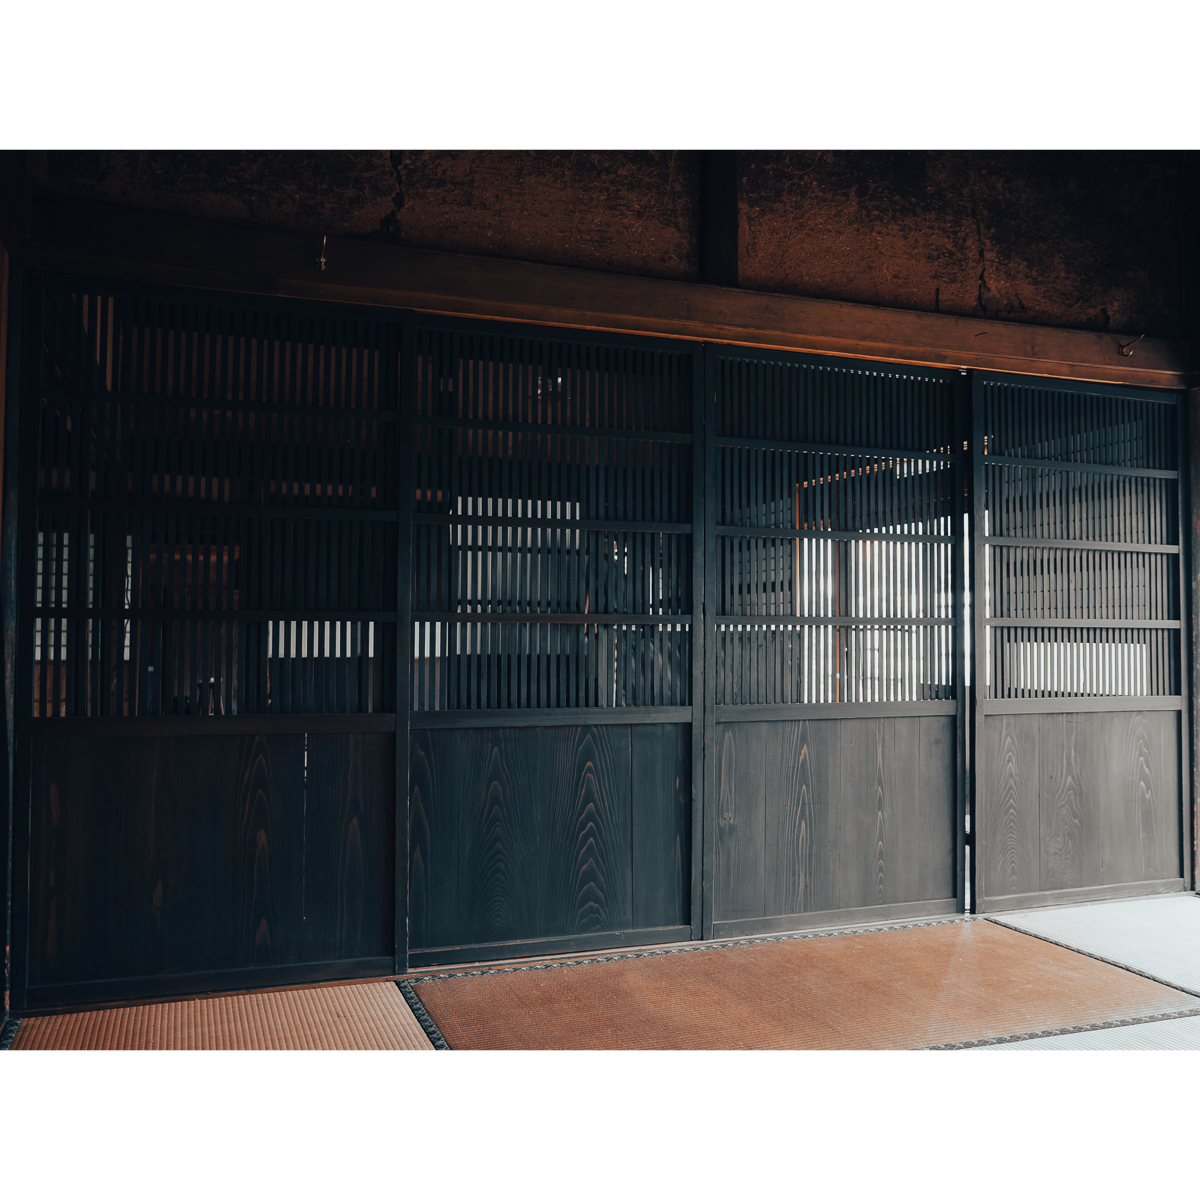 [ старый дом в японском стиле. двери ] Taisho период. тысяч основной . дверь 4 листов / ширина 930 высота 1765 толщина 32/. дверь раздвижная дверь деревянная дверь из дерева двери старый двери / магазин салон старый дом в японском стиле модифицировано оборудование преобразование DIY